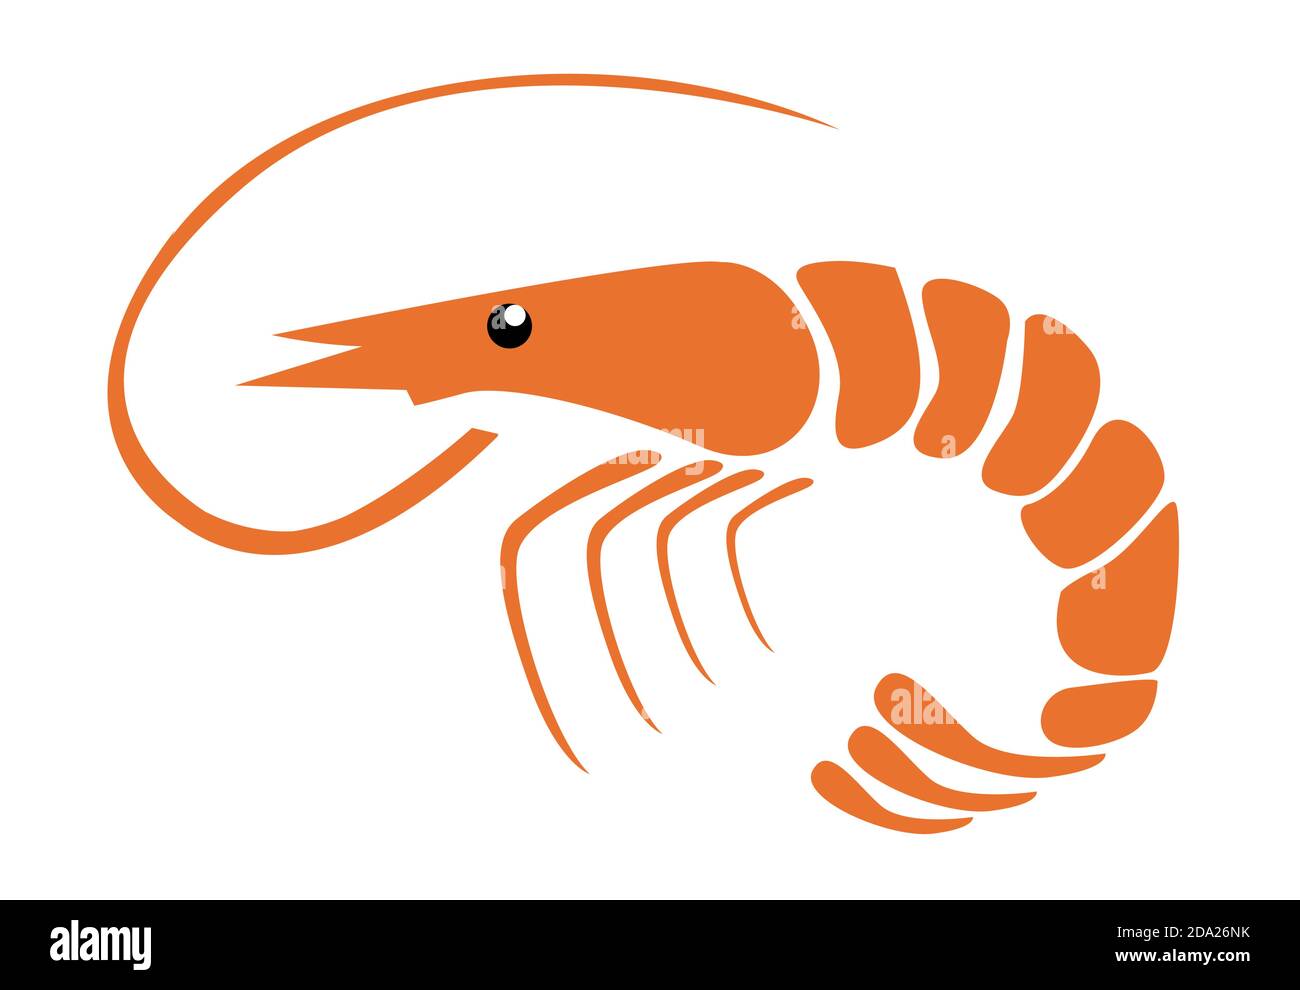 Shrimp vector illustration on white Stock Vector